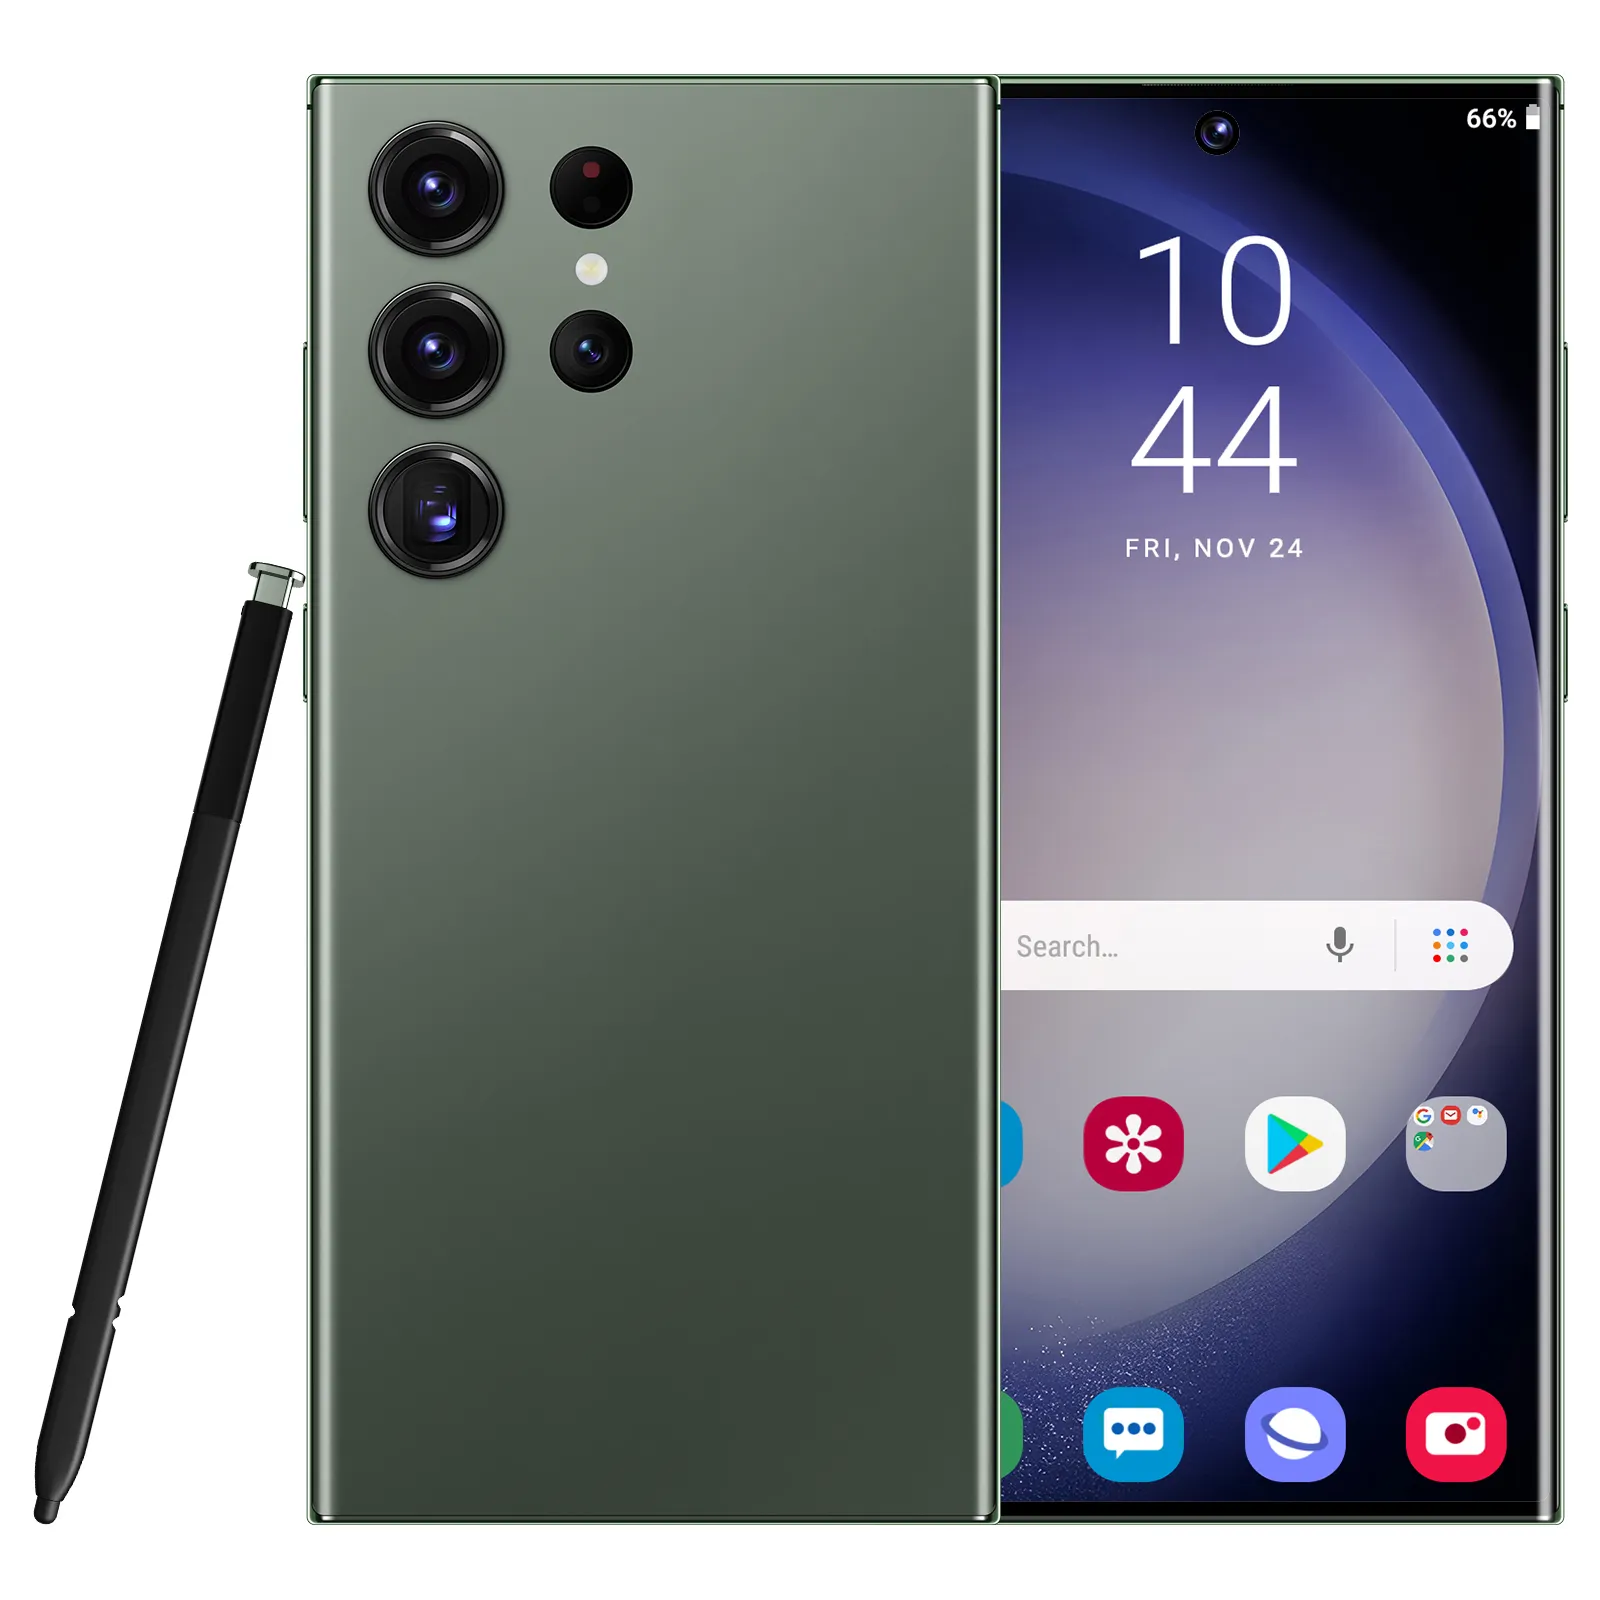 नया पाम आकार का स्मार्ट फोन 3 ग्राम एंड्रॉइड 8.1 क्वाड रियर डुअल सिम लंबे समय तक स्टैंडबाय 3 इंच का स्टैंडबाय